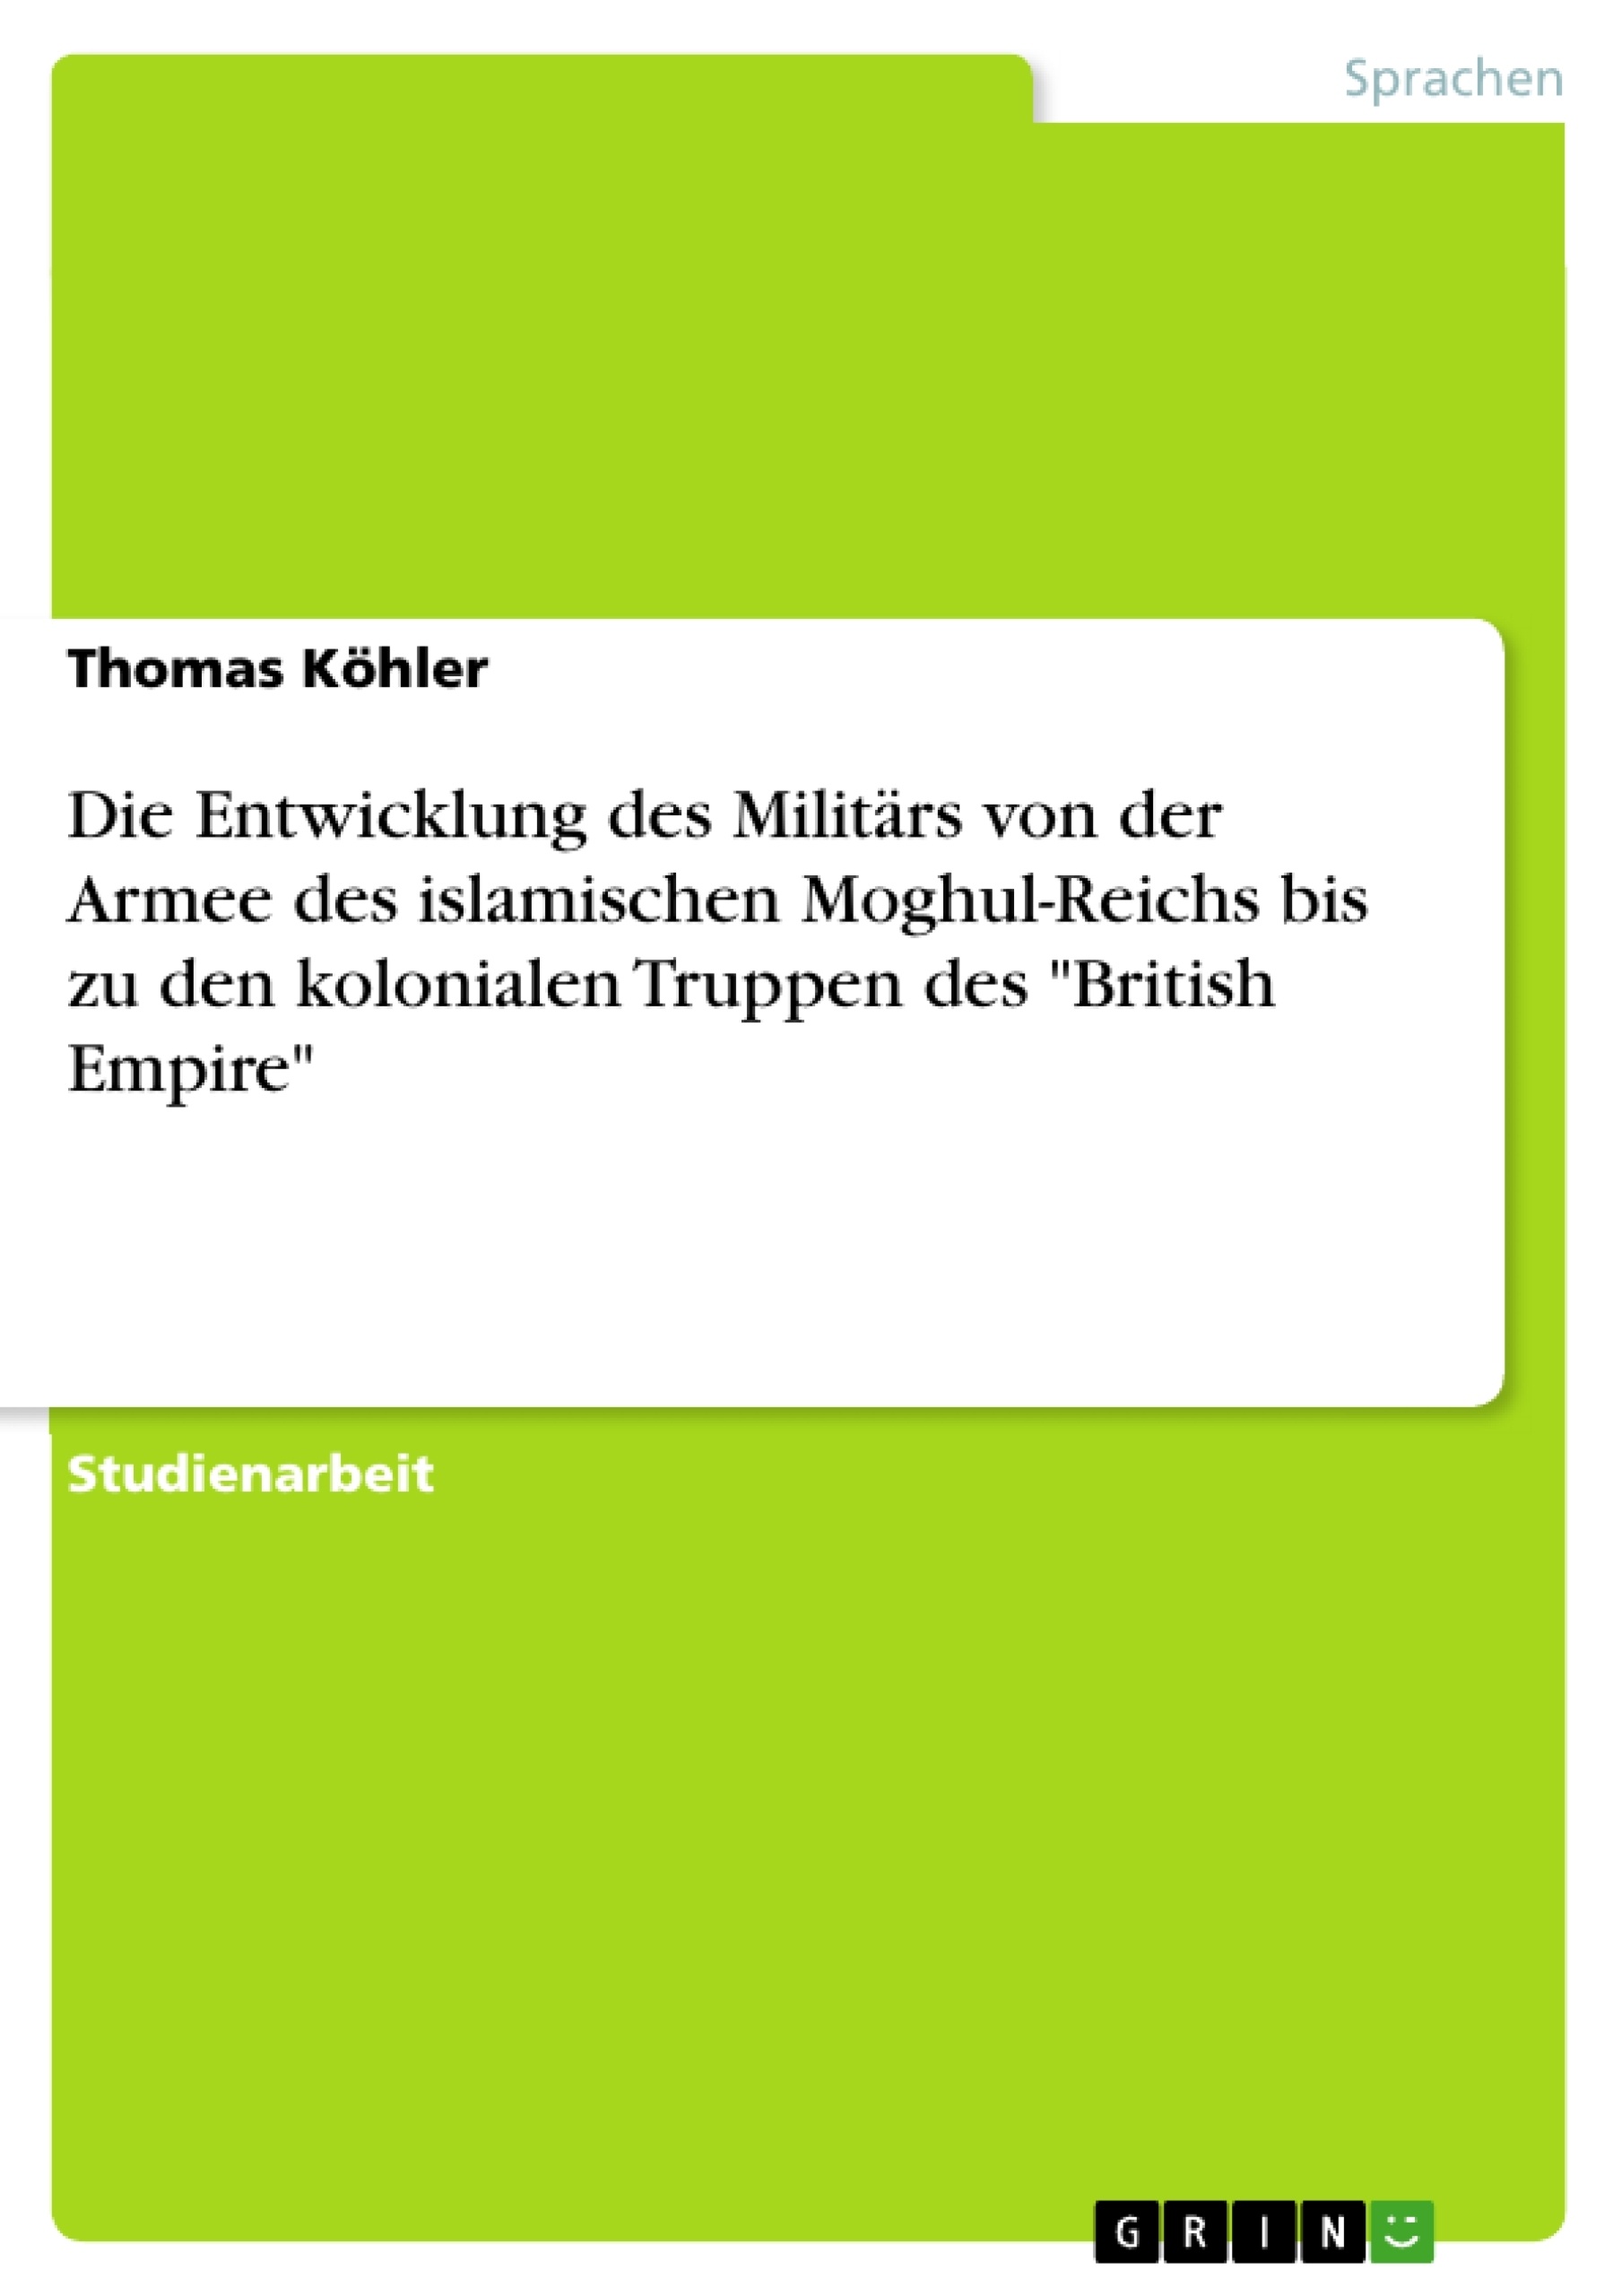 Titel: Die Entwicklung des Militärs von der Armee des  islamischen  Moghul-Reichs bis zu den kolonialen  Truppen des "British Empire"